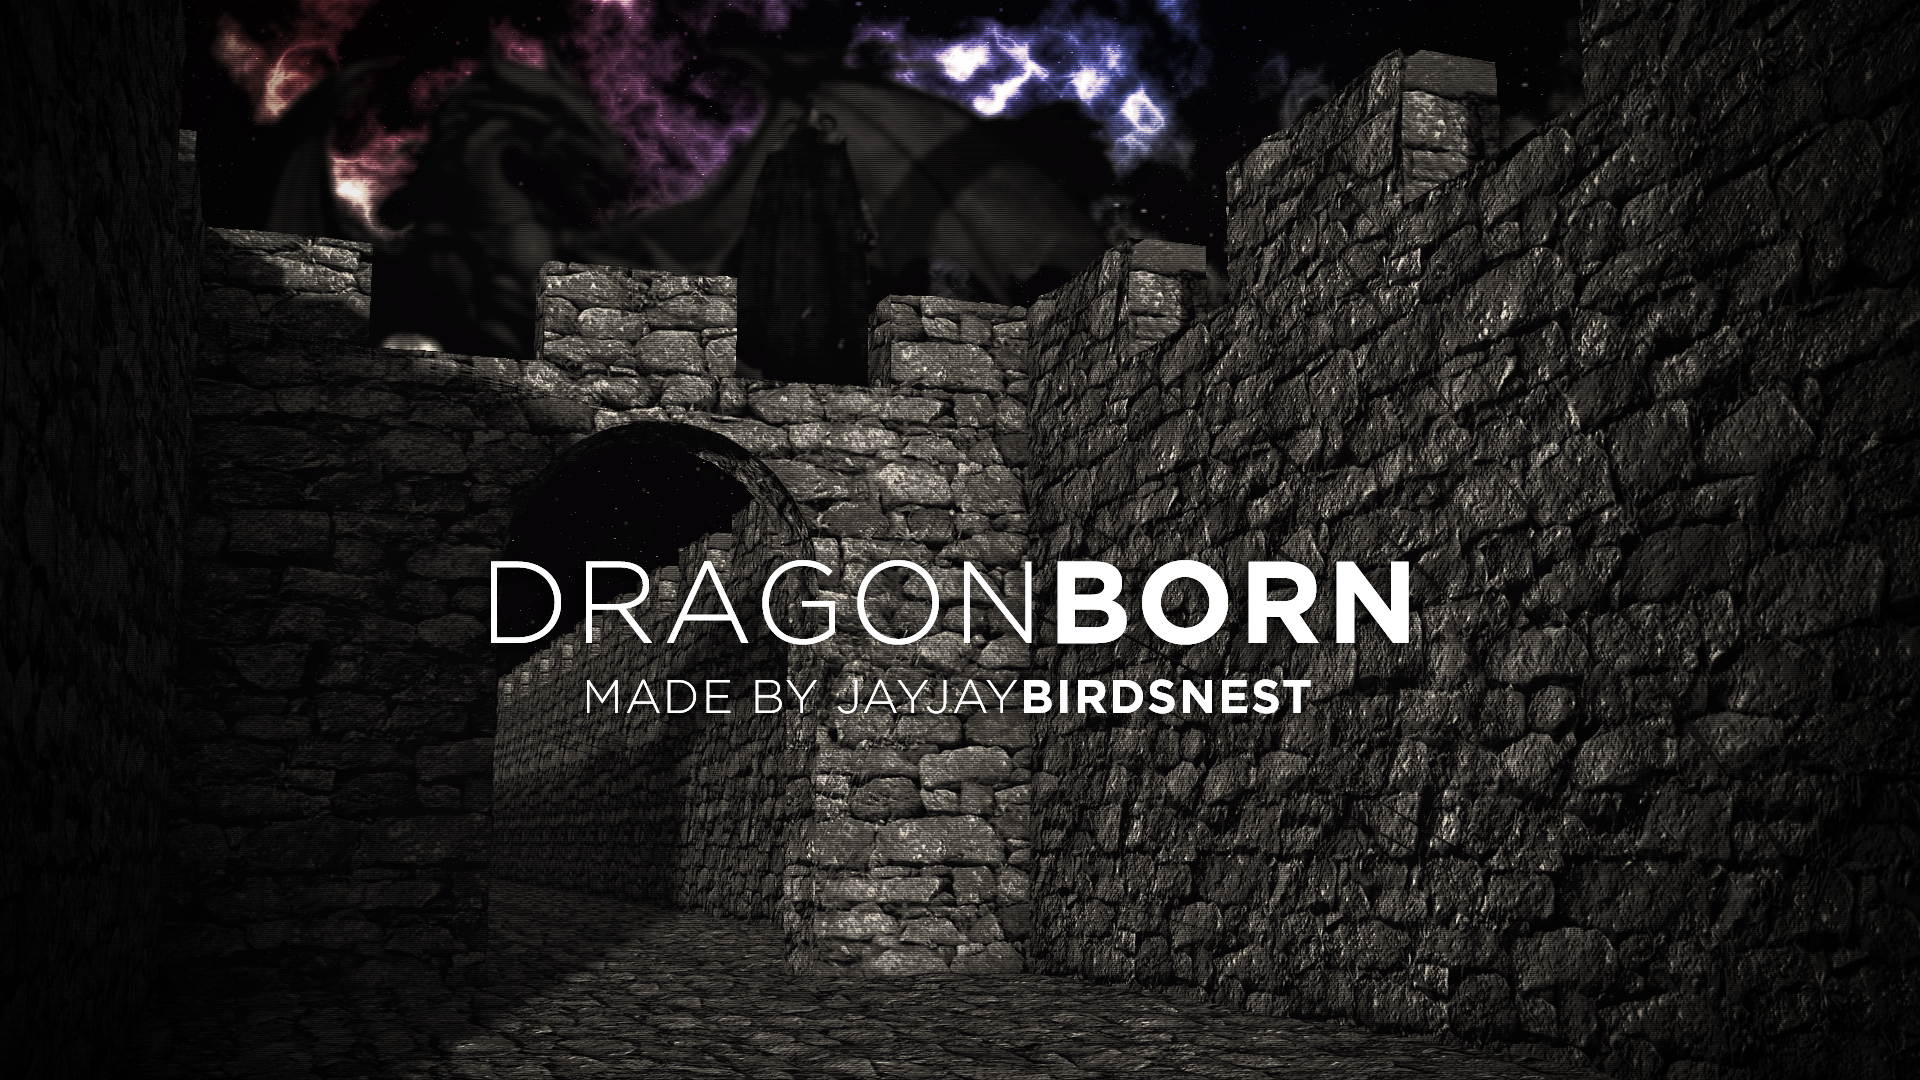 Dragonborn Skyrim Wallpaper by jayjaybirdsnest on DeviantArt